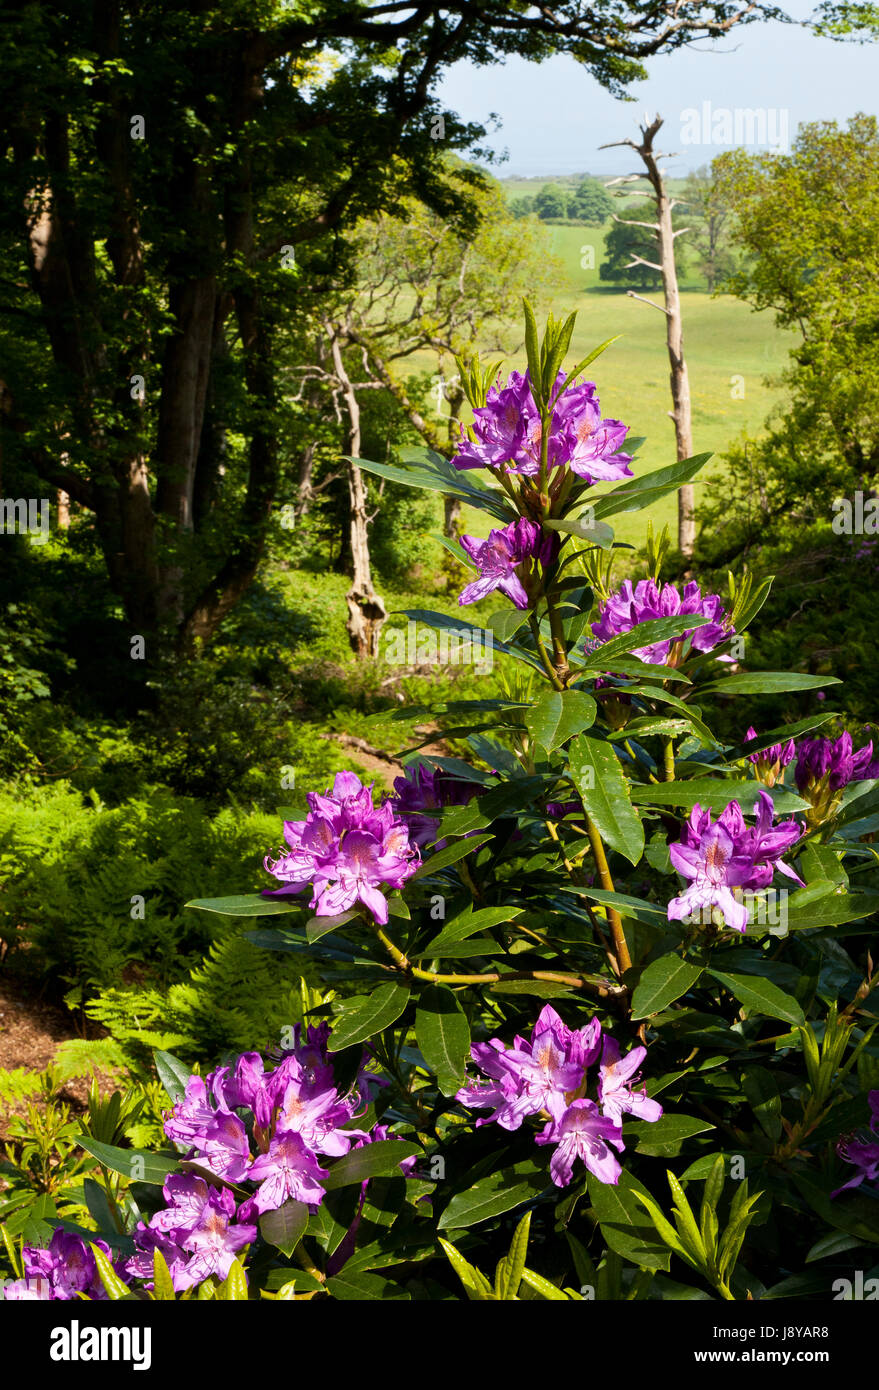 Rhododendron fleurs à Sheringham Park, Norfolk, England, UK Banque D'Images